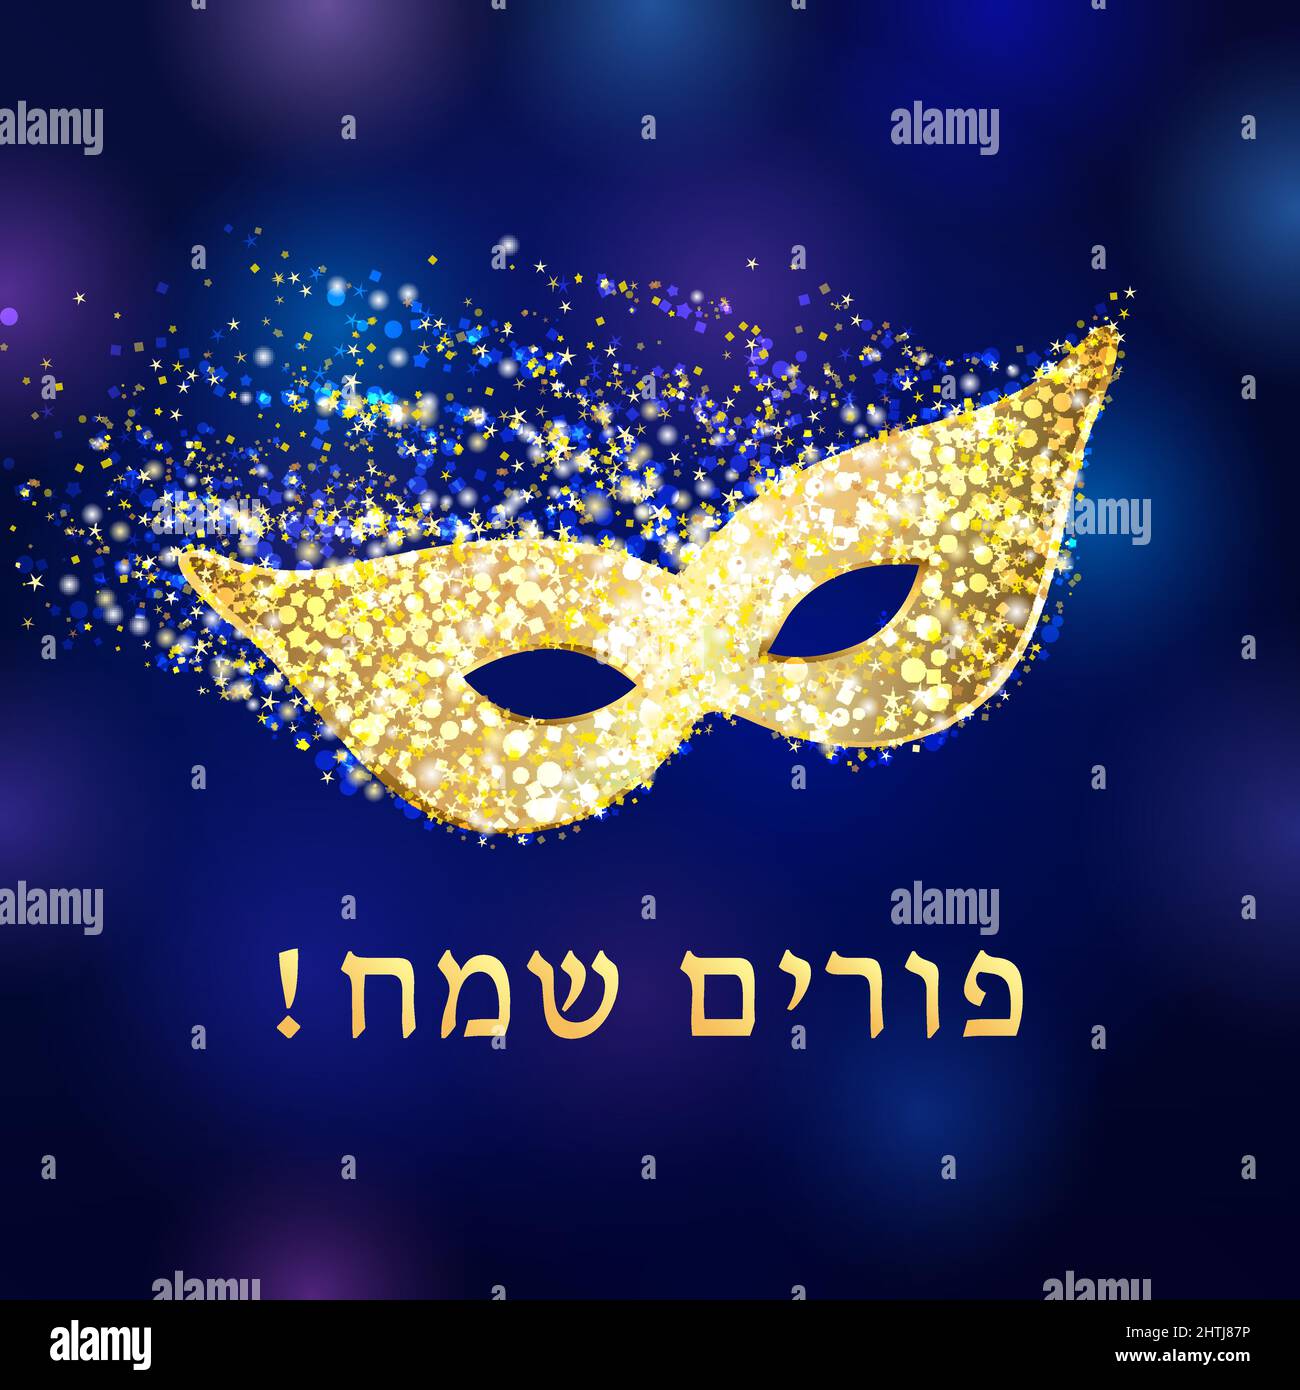 Maschera Happy purim e confetti colorati. Modello grafico astratto isolato. Happy Purim script ebraico, paillettes d'oro e maschera di carnevale lucido. Illustrazione Vettoriale